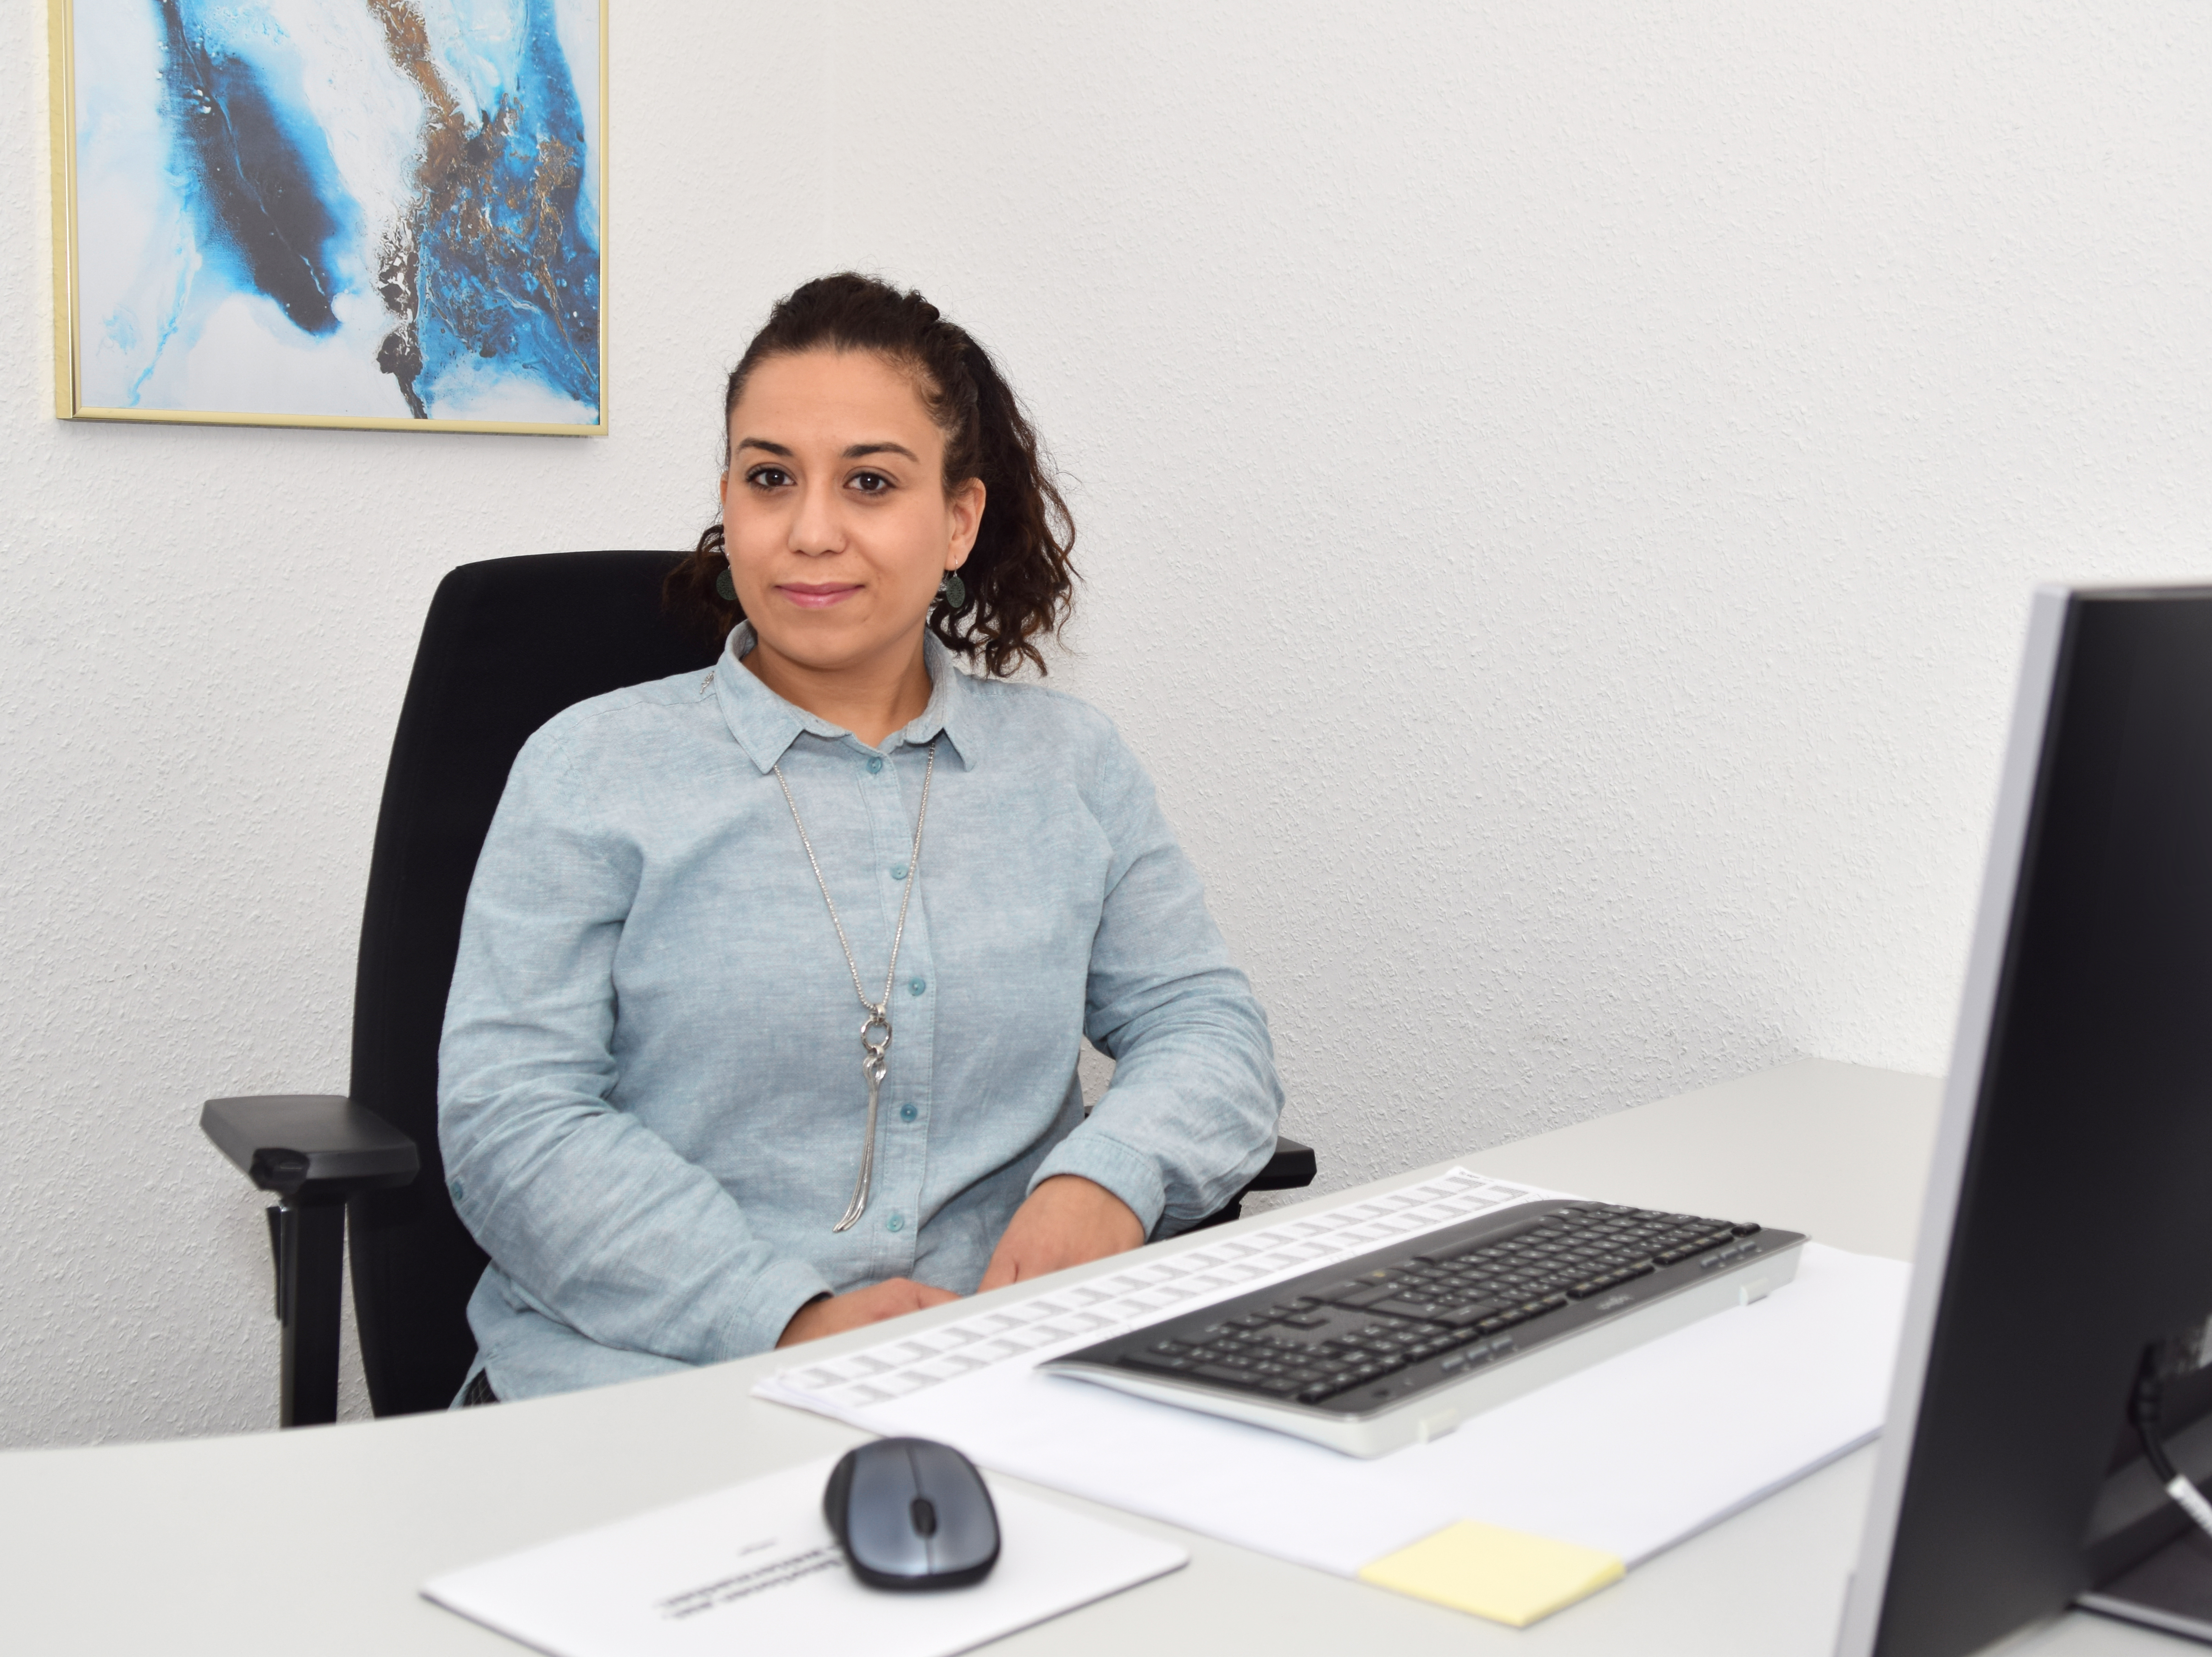 Gülay Alkan - Inhaberin, Pflegedienstleisterin und examinierte Altenpflegerin - in ihrem Büro des APA Pflegedienst Alkan in Ober-Mörlen